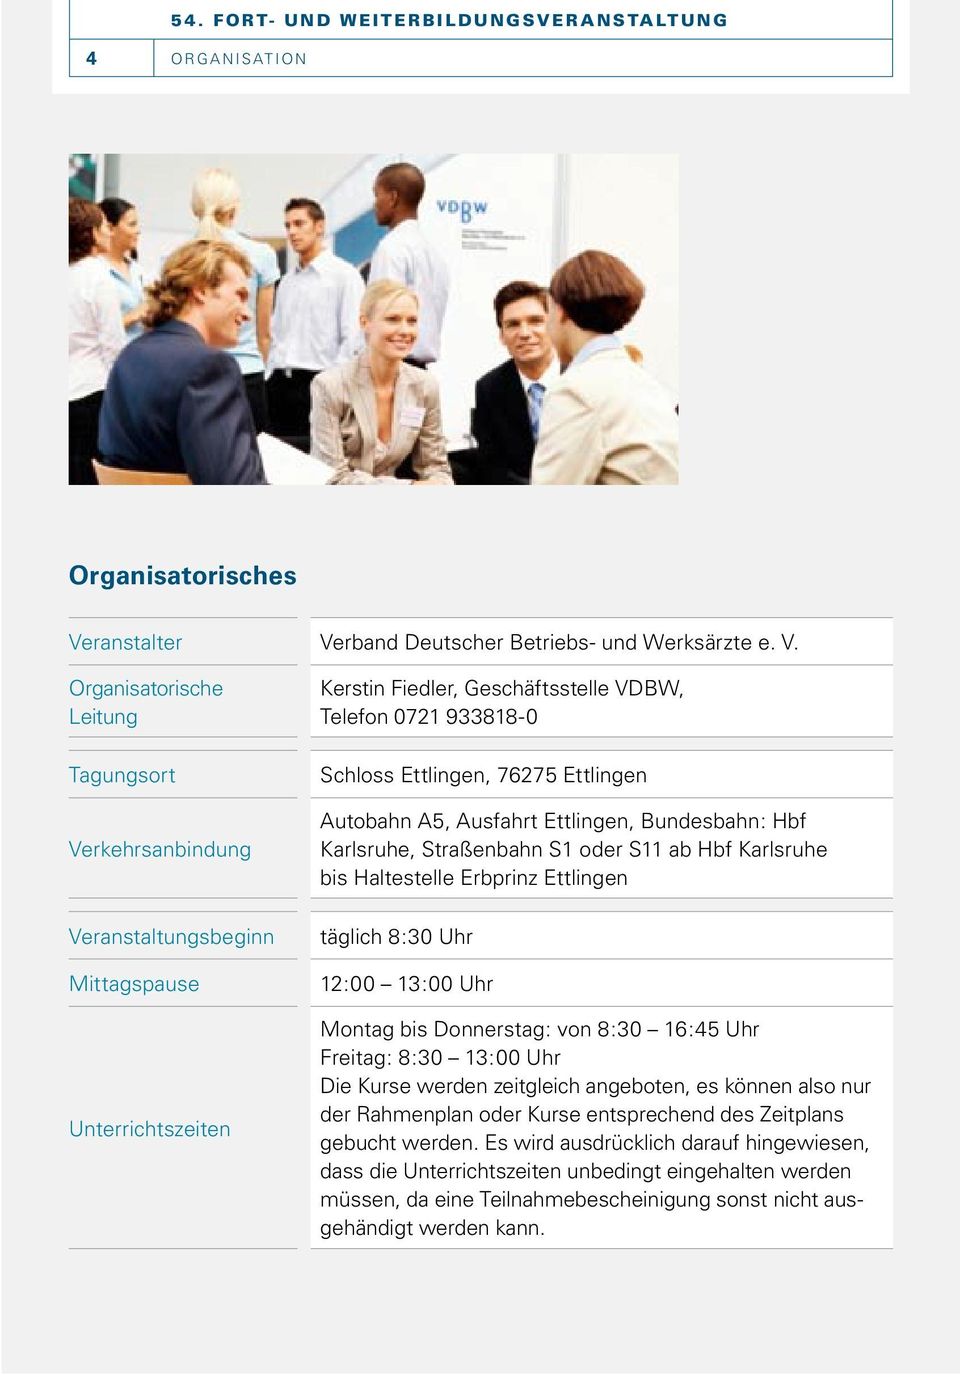 rband Deutscher Betriebs- und Werksärzte e. V.